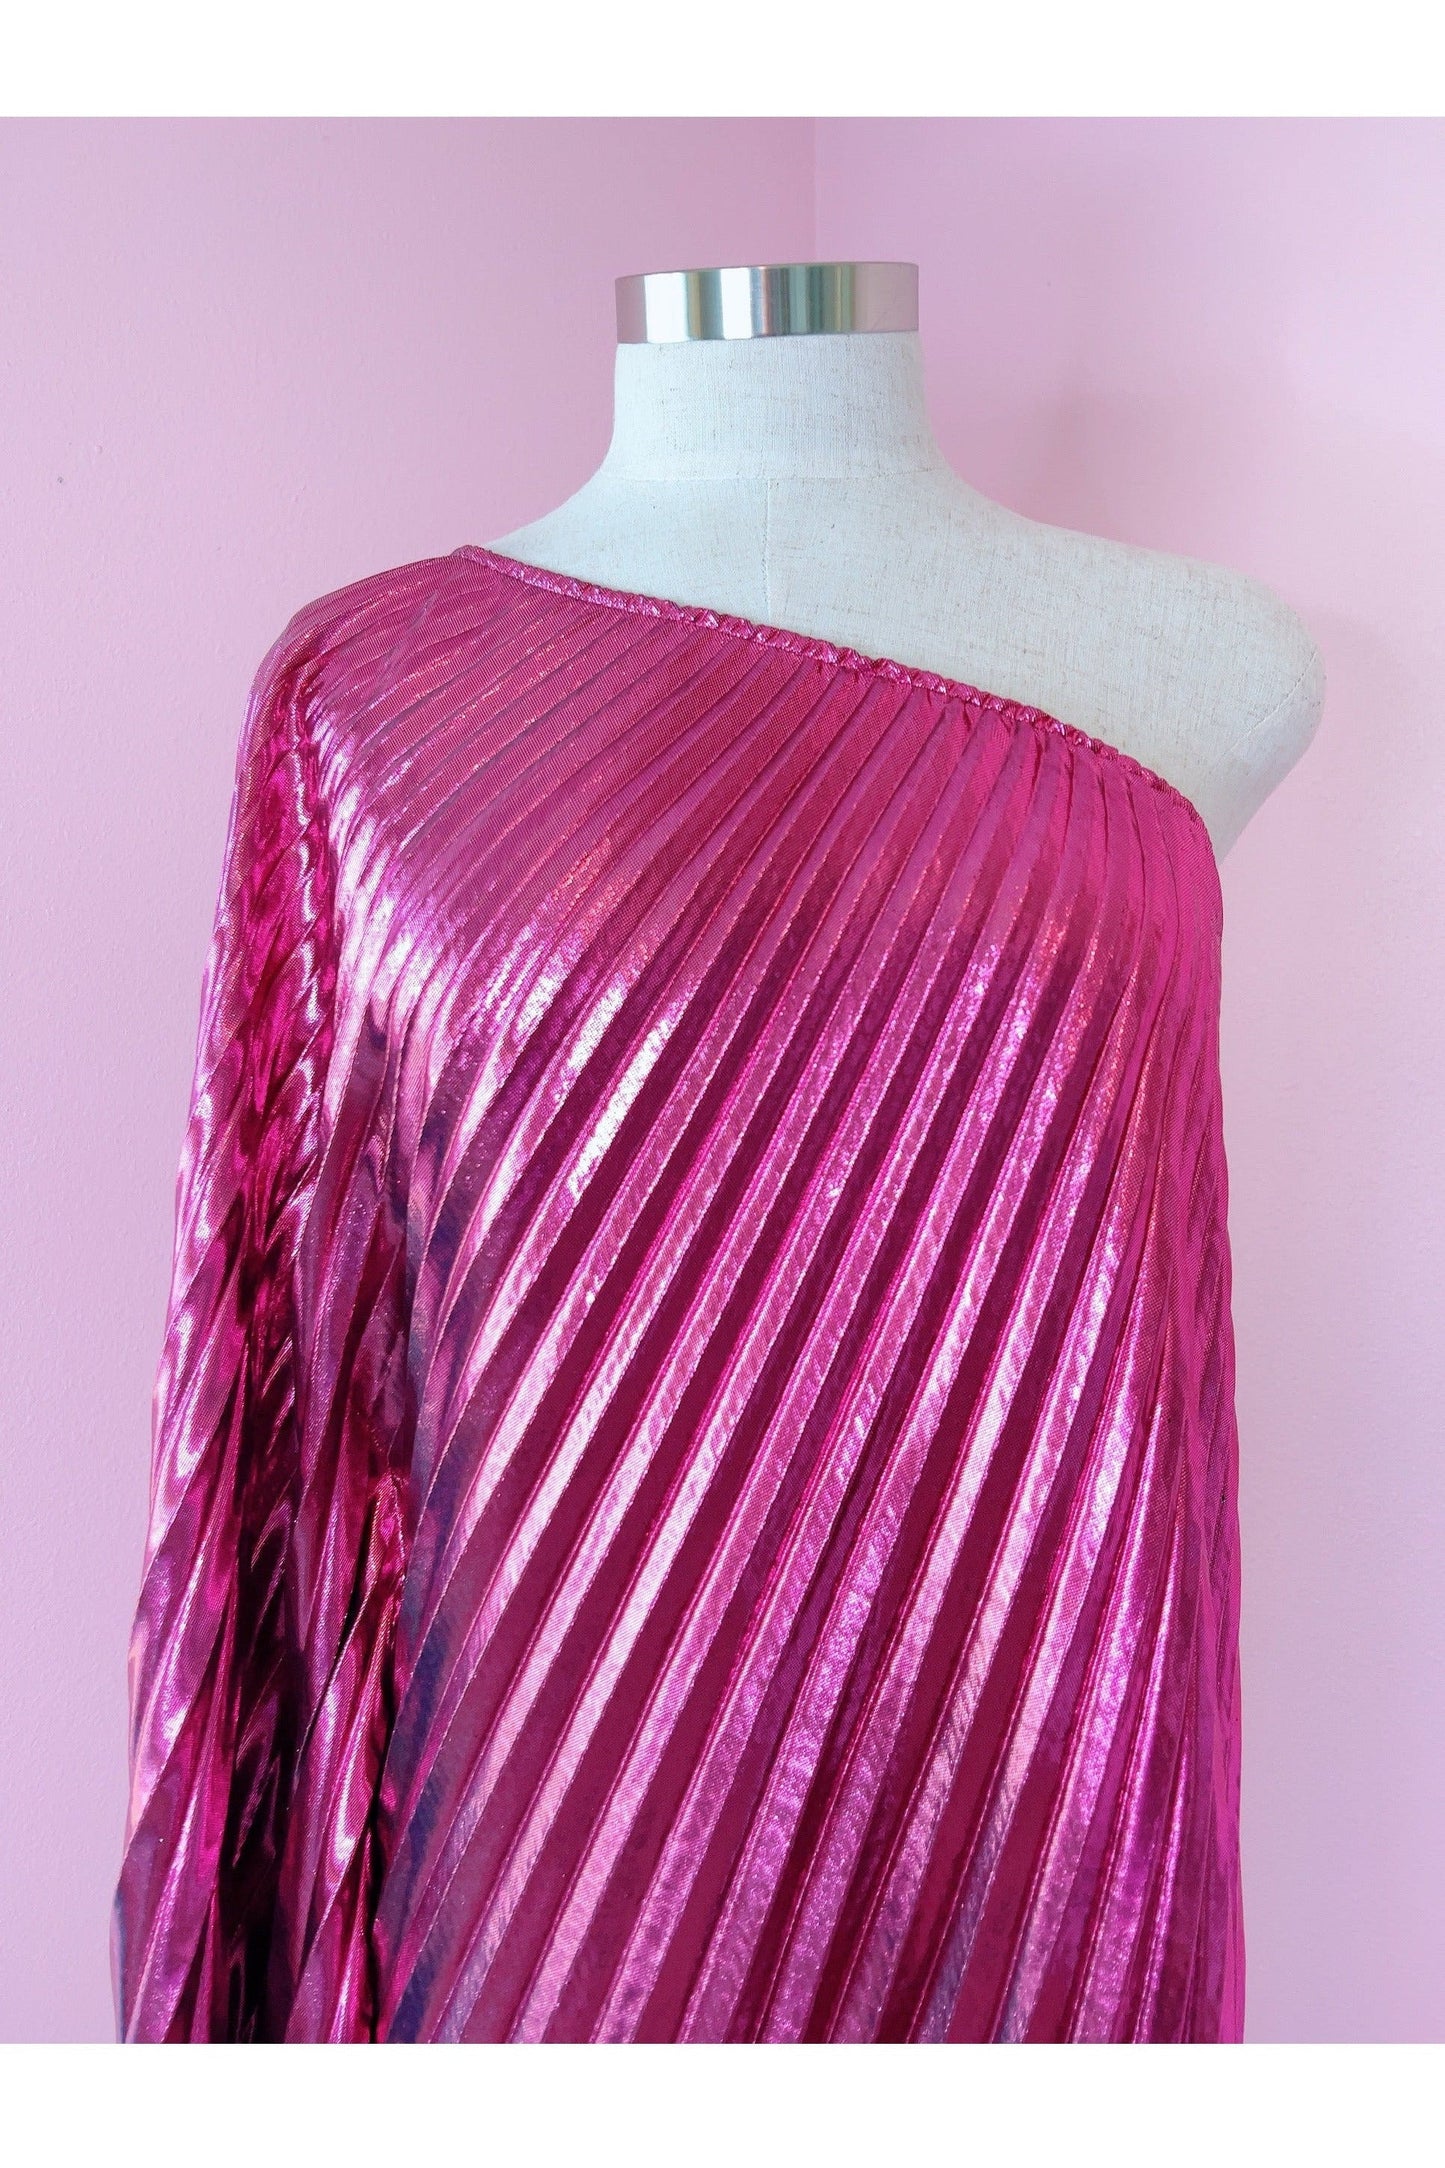 Audrey K Designs Vibrant Pink Metallic One Shoulder Designer Dress